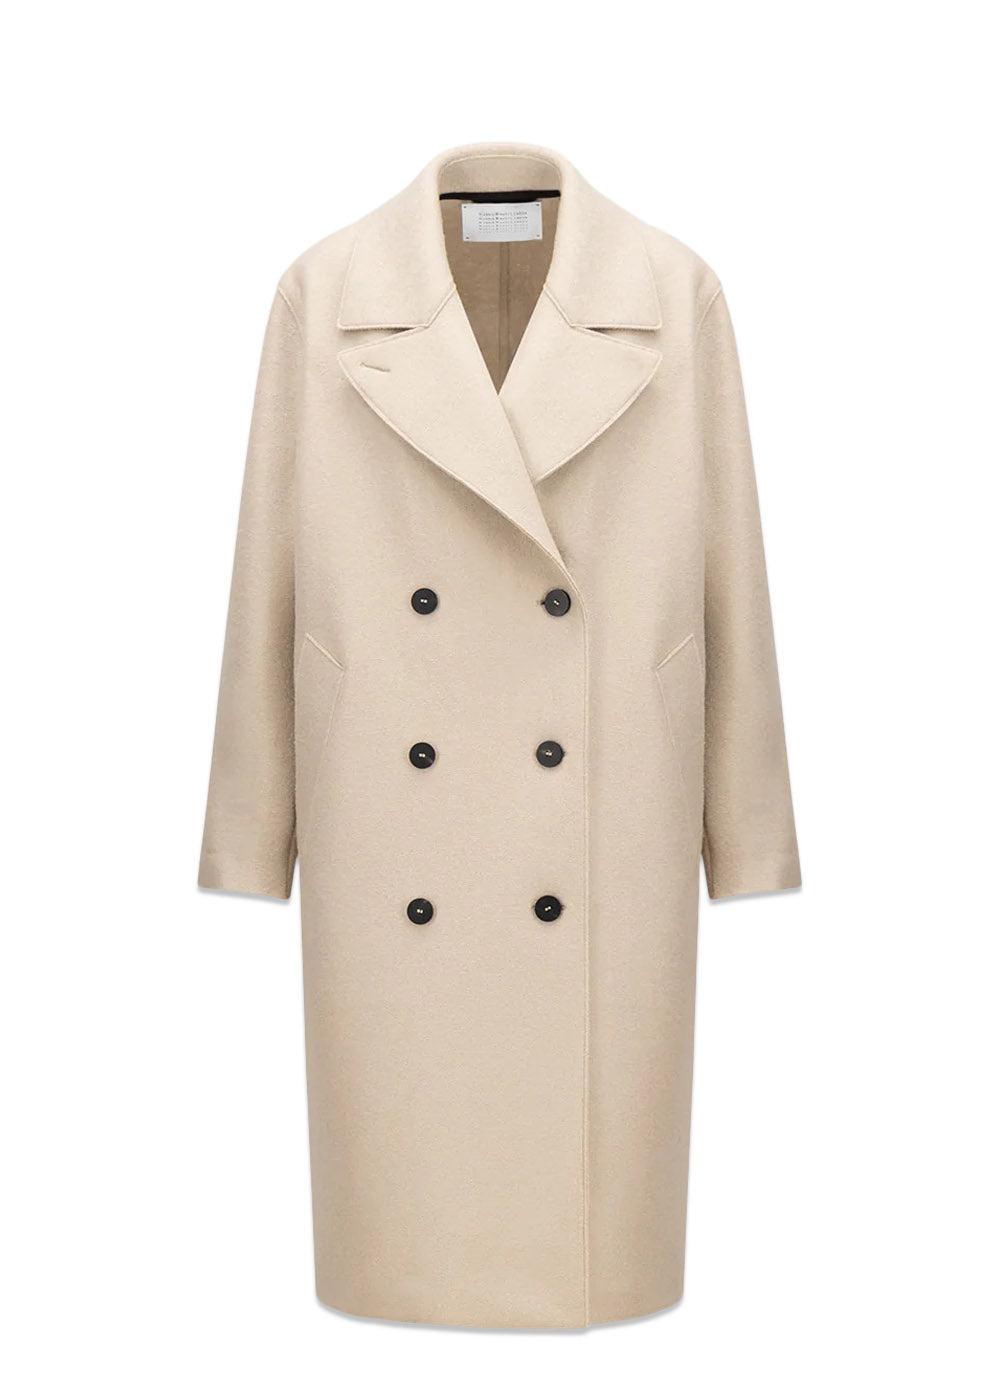 Harris Wharf Londons Women sailor coat pressed wool - Almond. Køb frakker her.